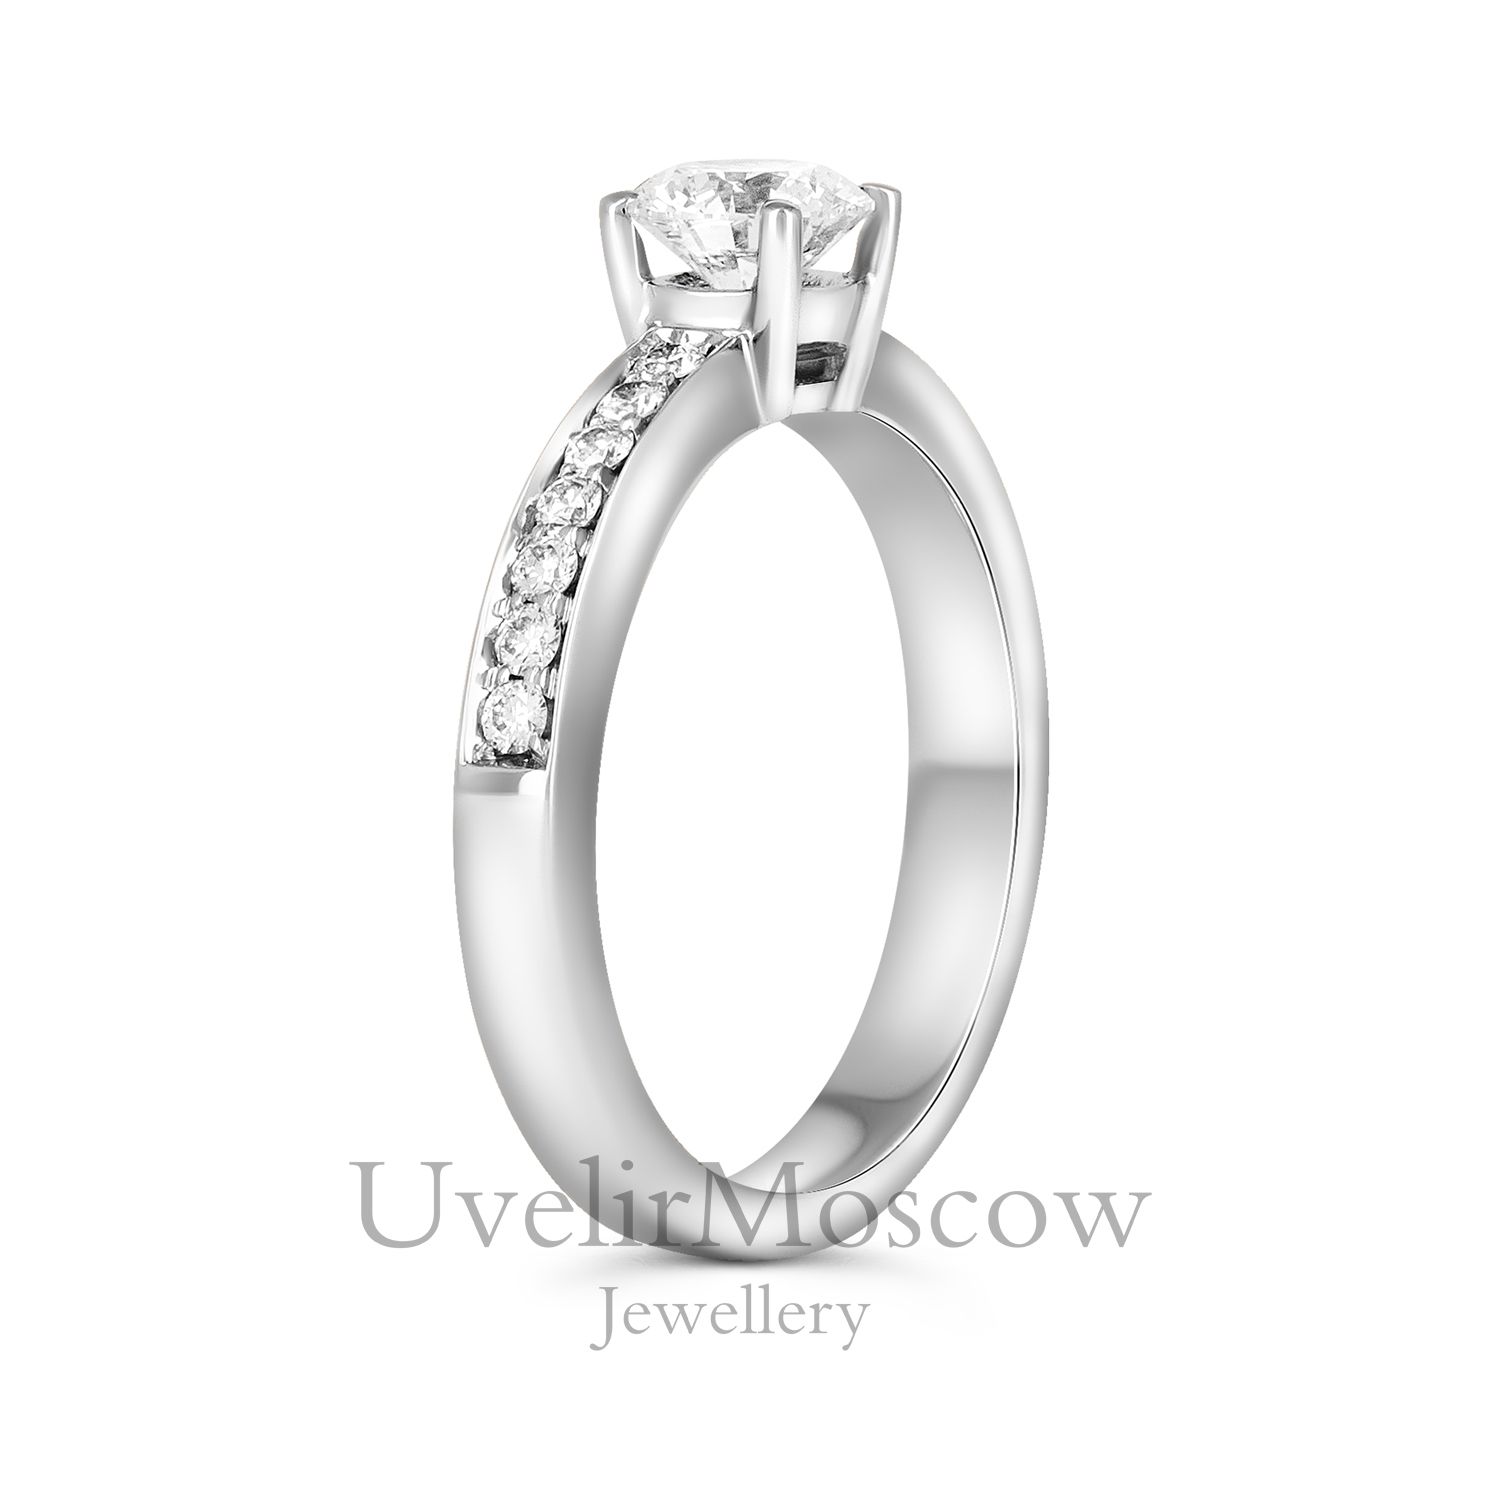 Нежное помолвочное кольцо с бриллиантовой дорожкой